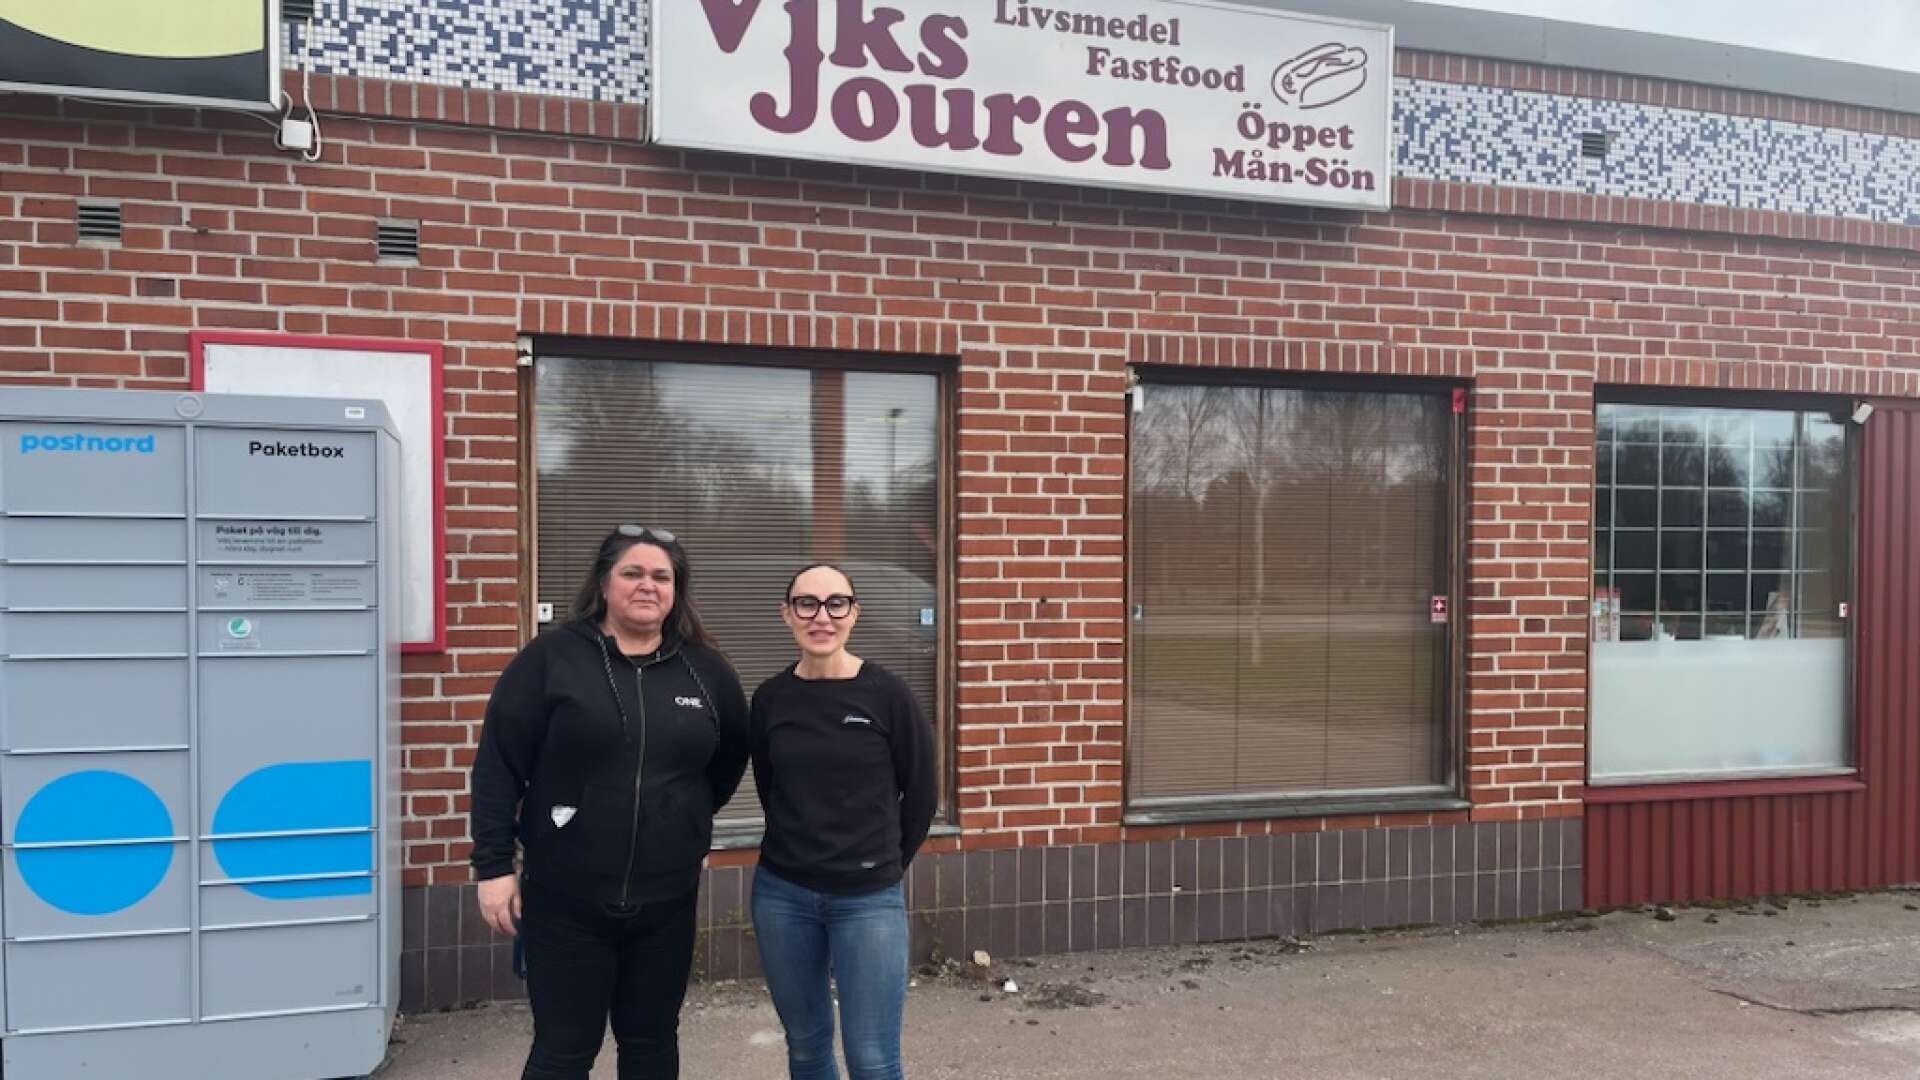 Viksjouren som drivs av Ulrika Mörk och Jeny Erliksson har fått sitt kontrakt uppsagt av fastighetsägaren. Nu är framtiden osäker för den populära butiken. 